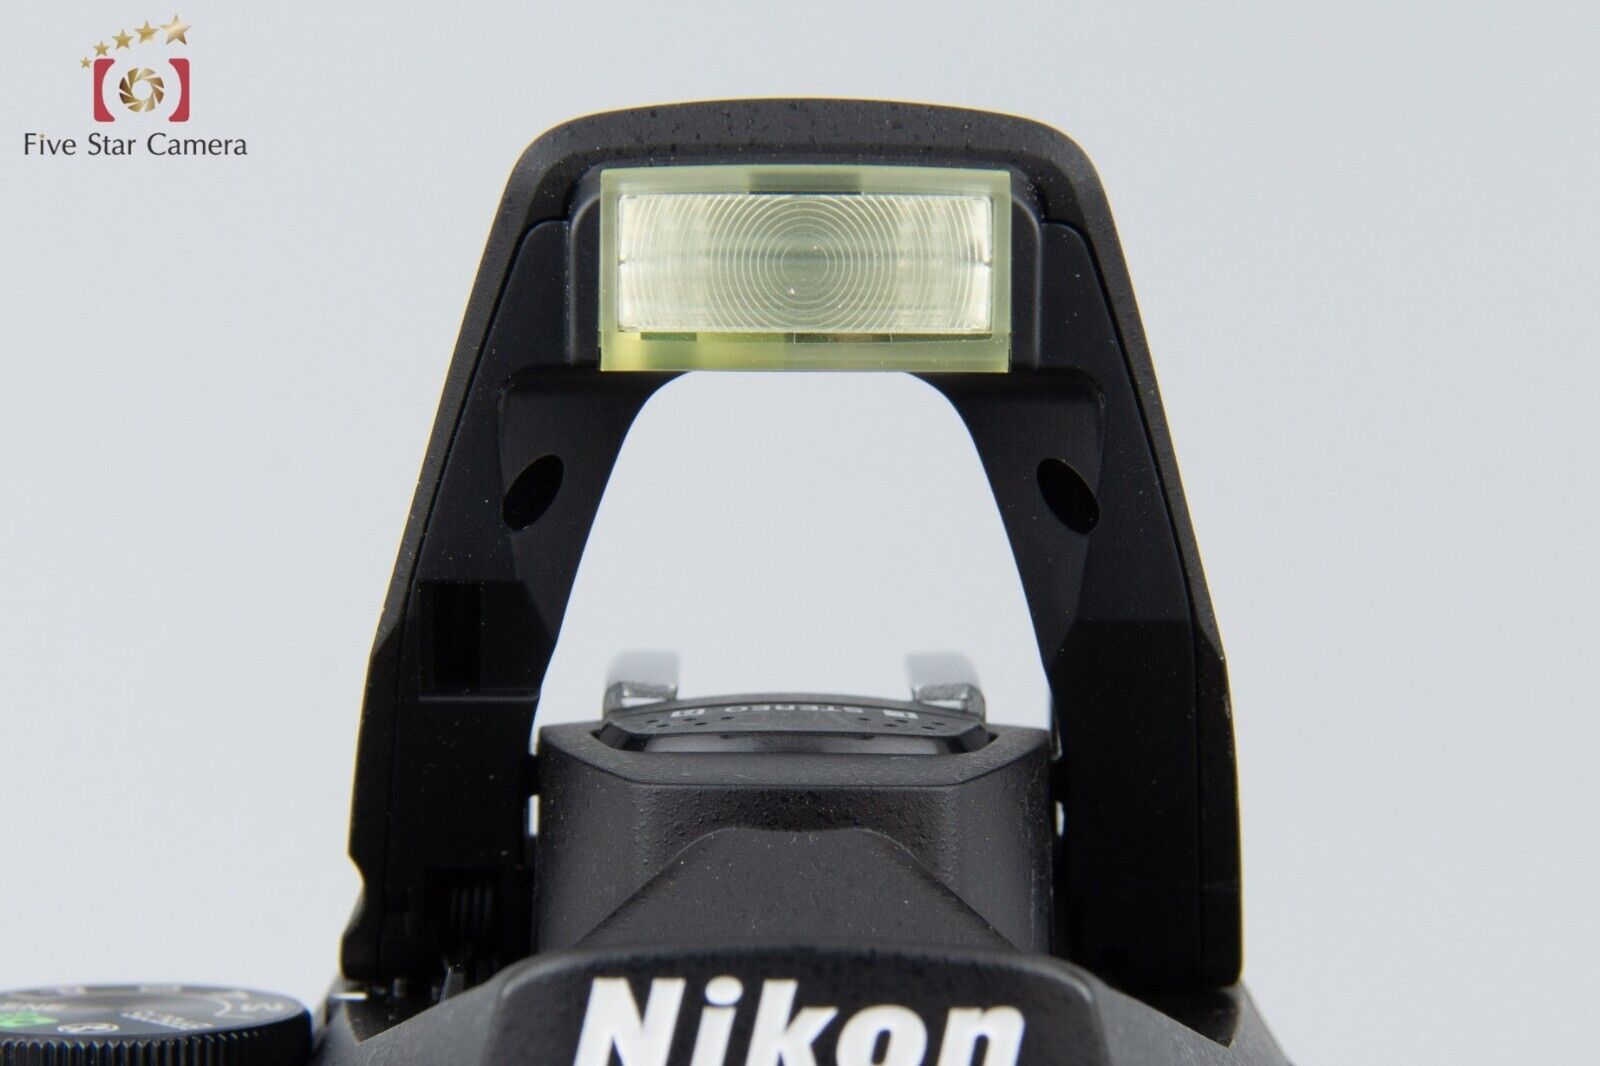 Near Mint!! Nikon D5500 Black 24.2 MP Digital SLR Camera Body